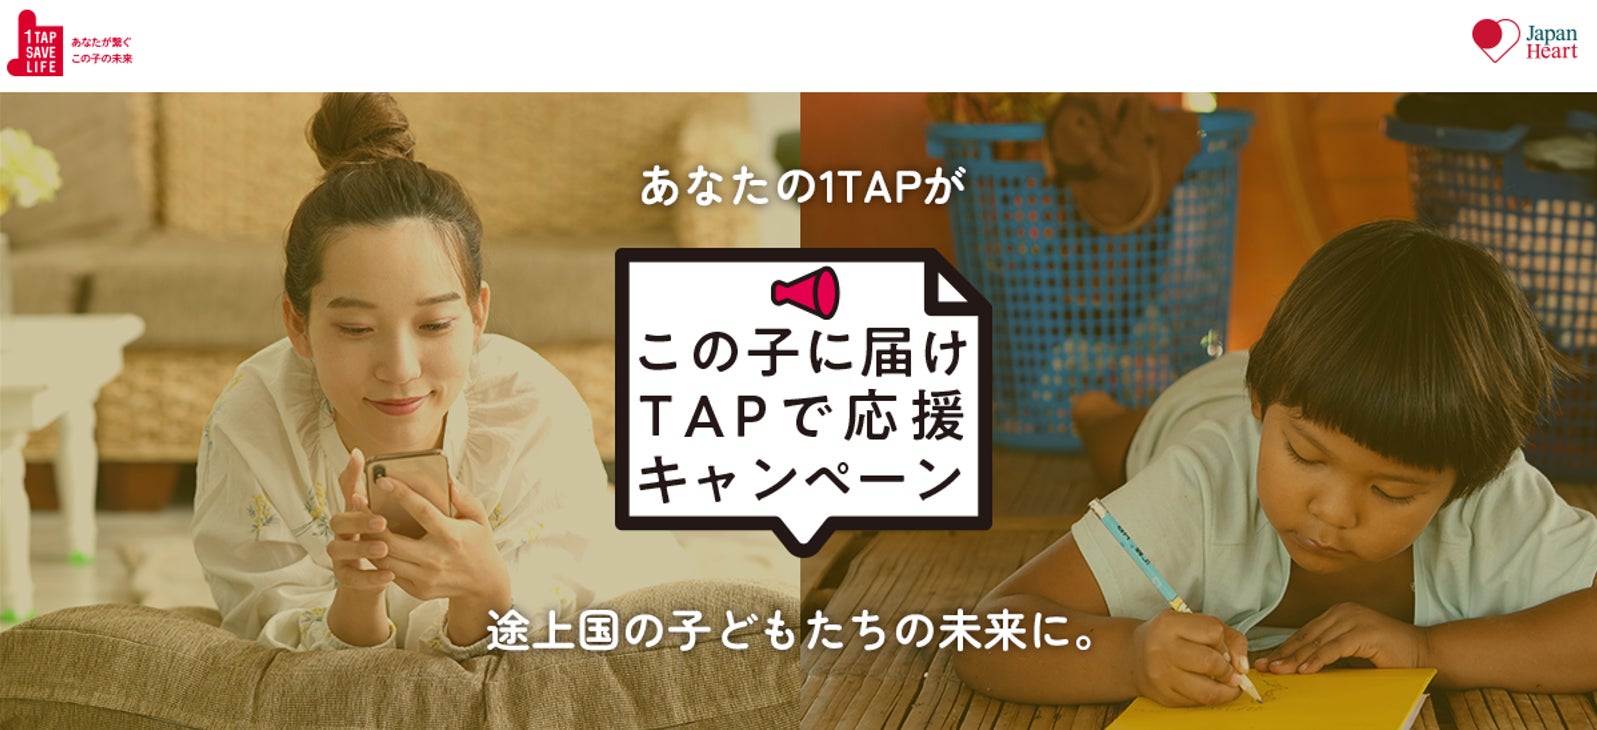 SHIFTがジャパンハートと共同企画、「この子に届け TAPで応援キャンペーン」を開催のサブ画像1